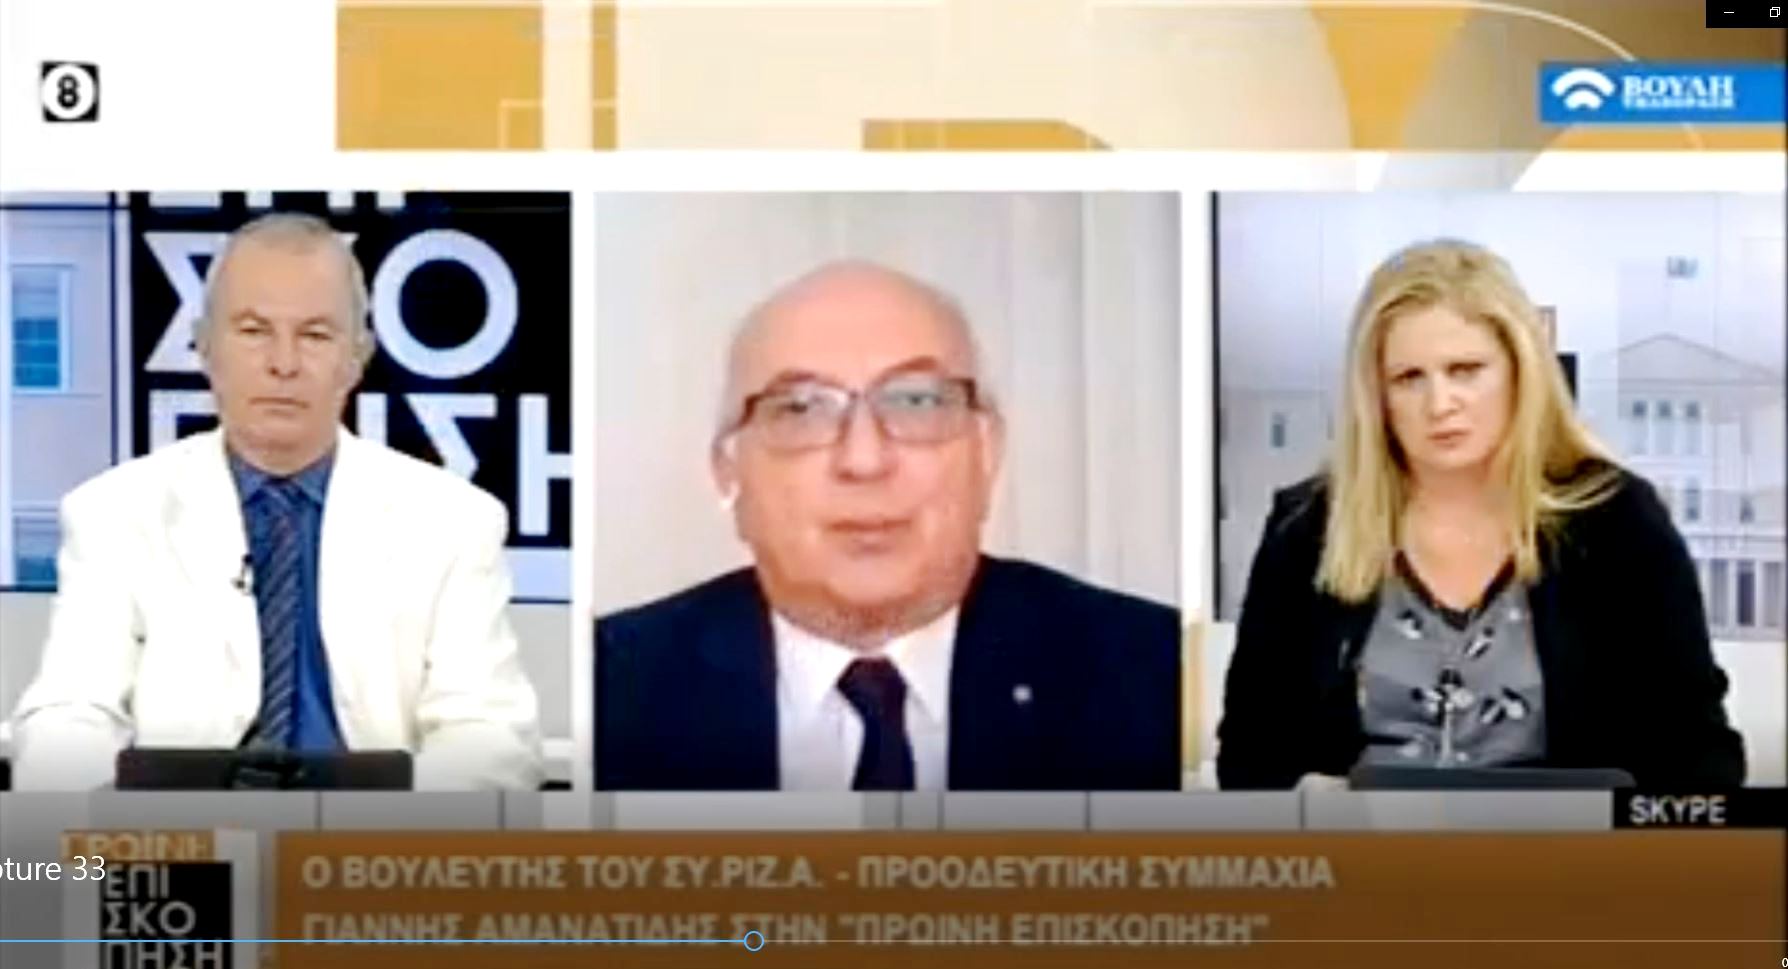 Γ. Αμανατίδης: «Τα προβλήματα συσσωρεύονται και πρέπει να δοθούν εξηγήσεις από την κυβέρνηση» -  βίντεο